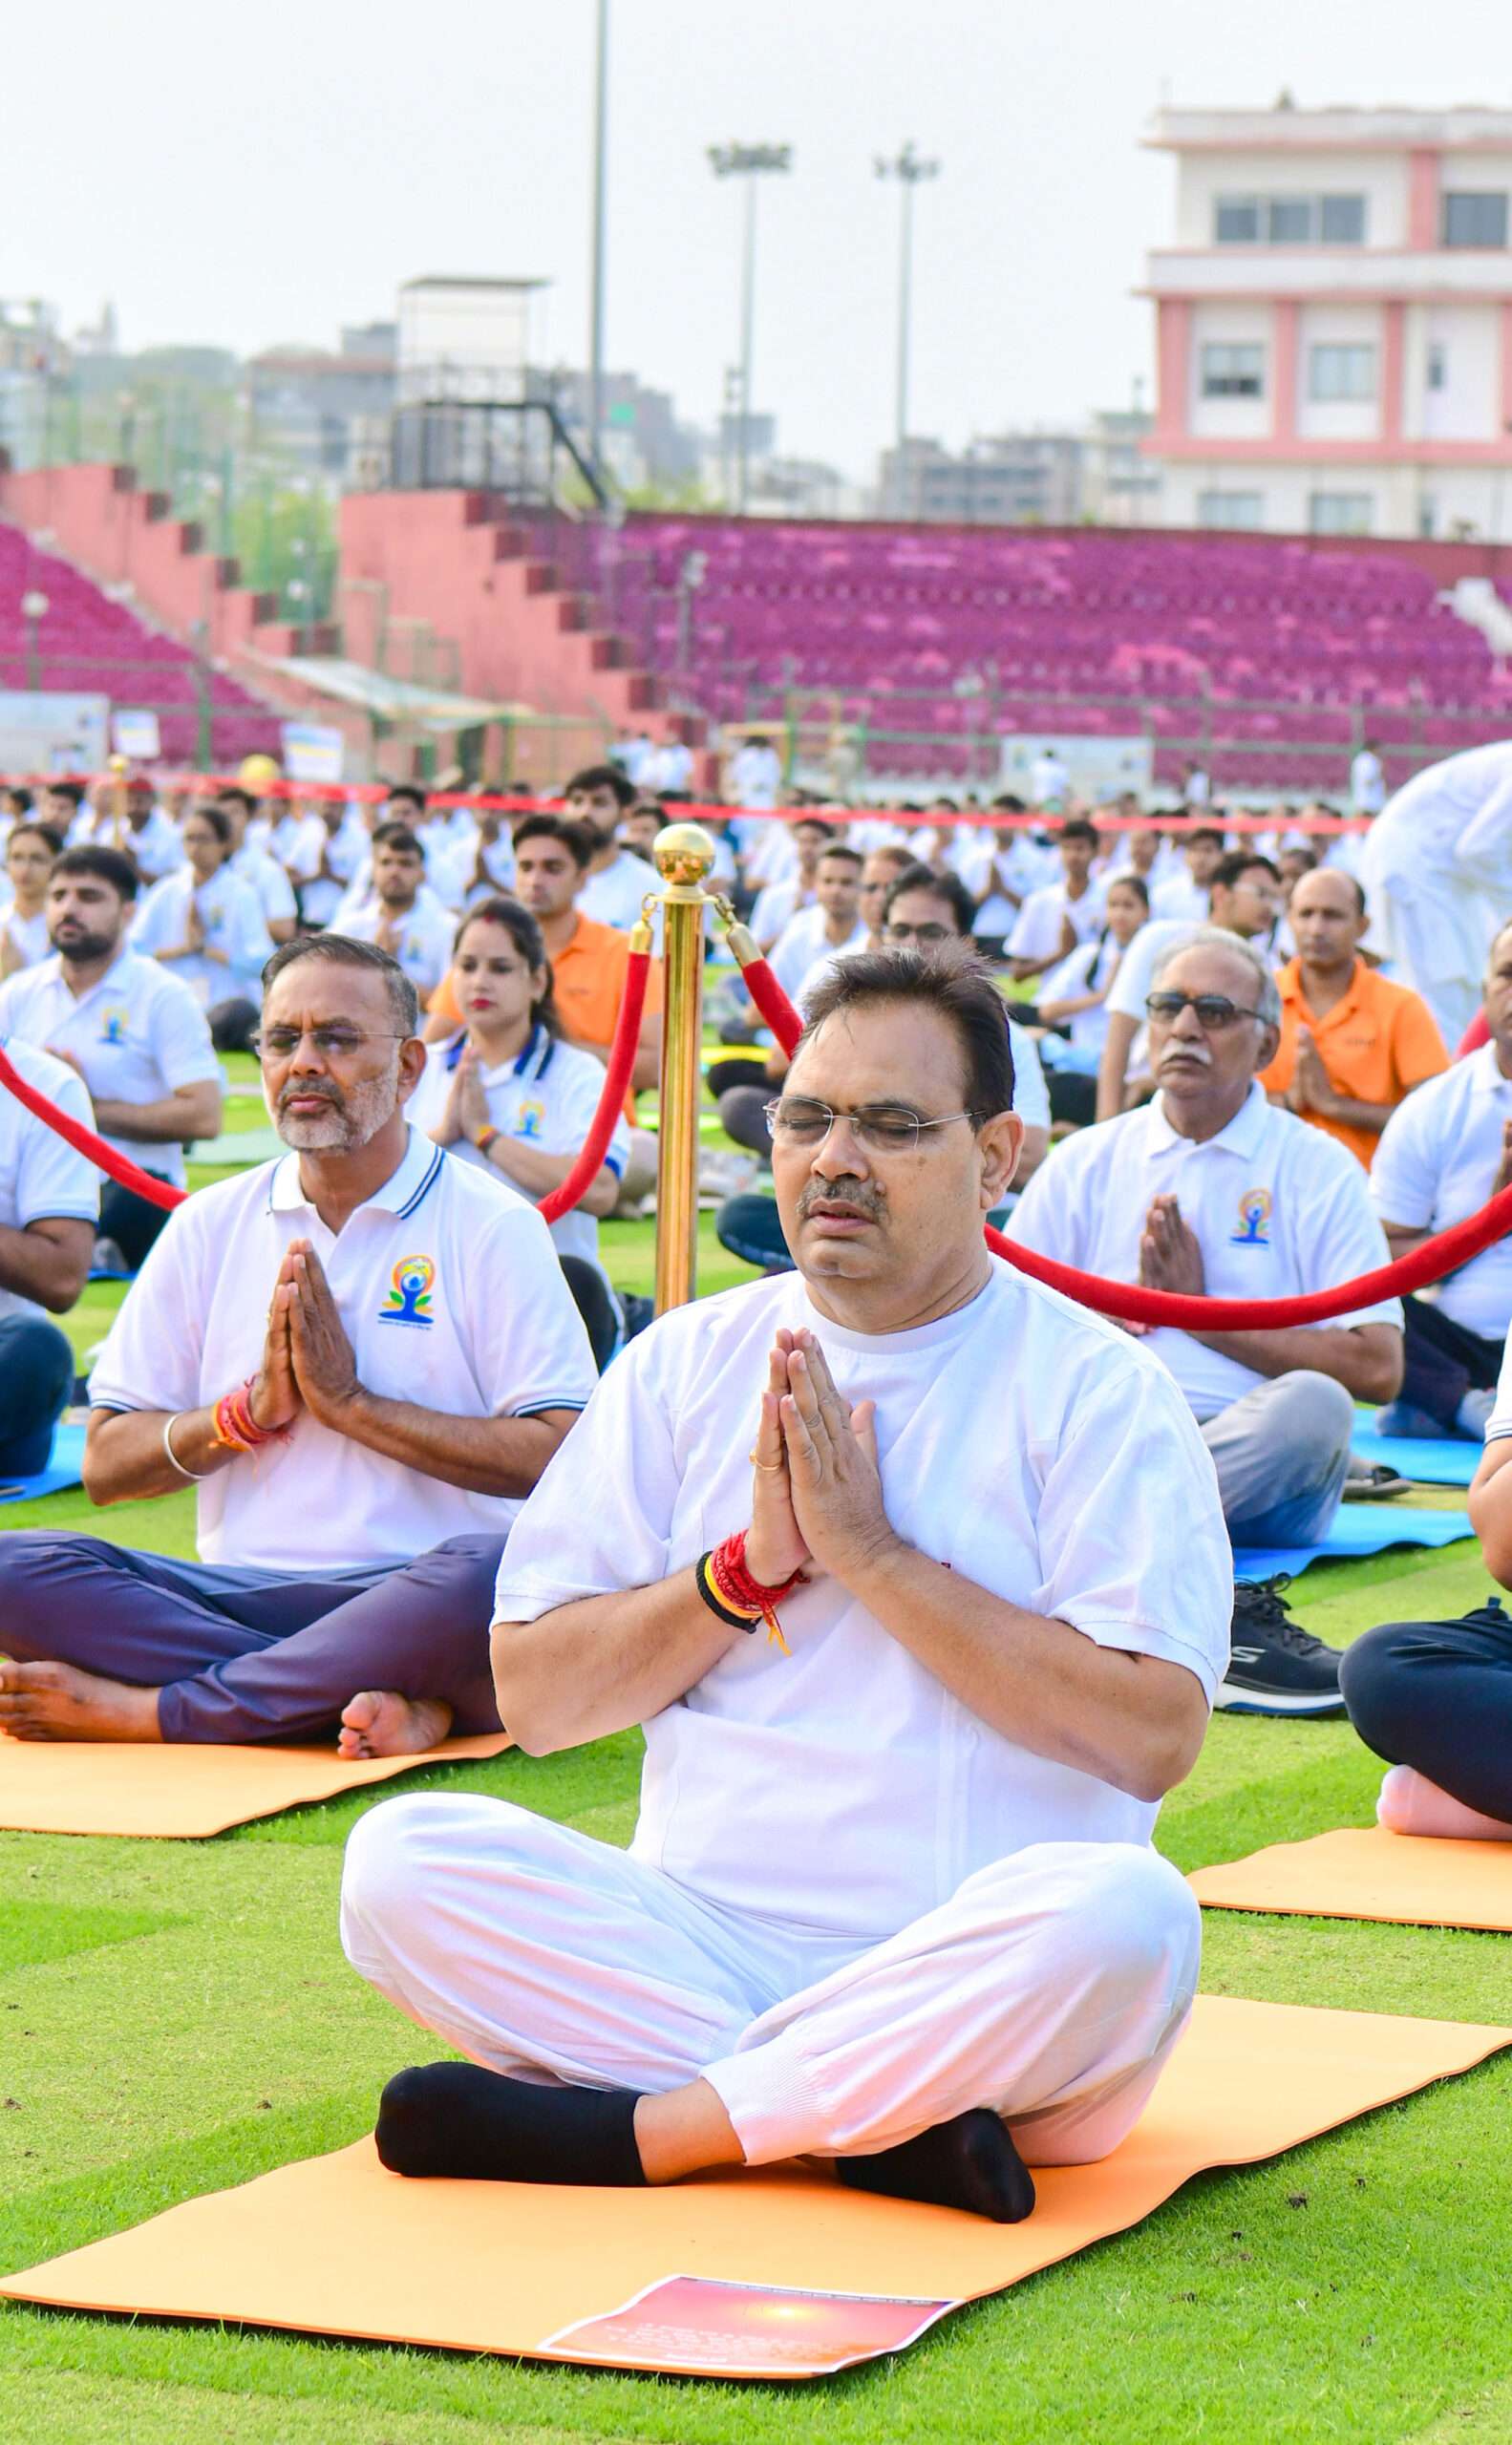 मुख्यमंत्री श्री भजनलाल शर्मा: स्वस्थ जीवन शैली में योग की अहम भूमिका प्रधानमंत्री जी की पहल से विश्व में योग हुआ लोकप्रिय